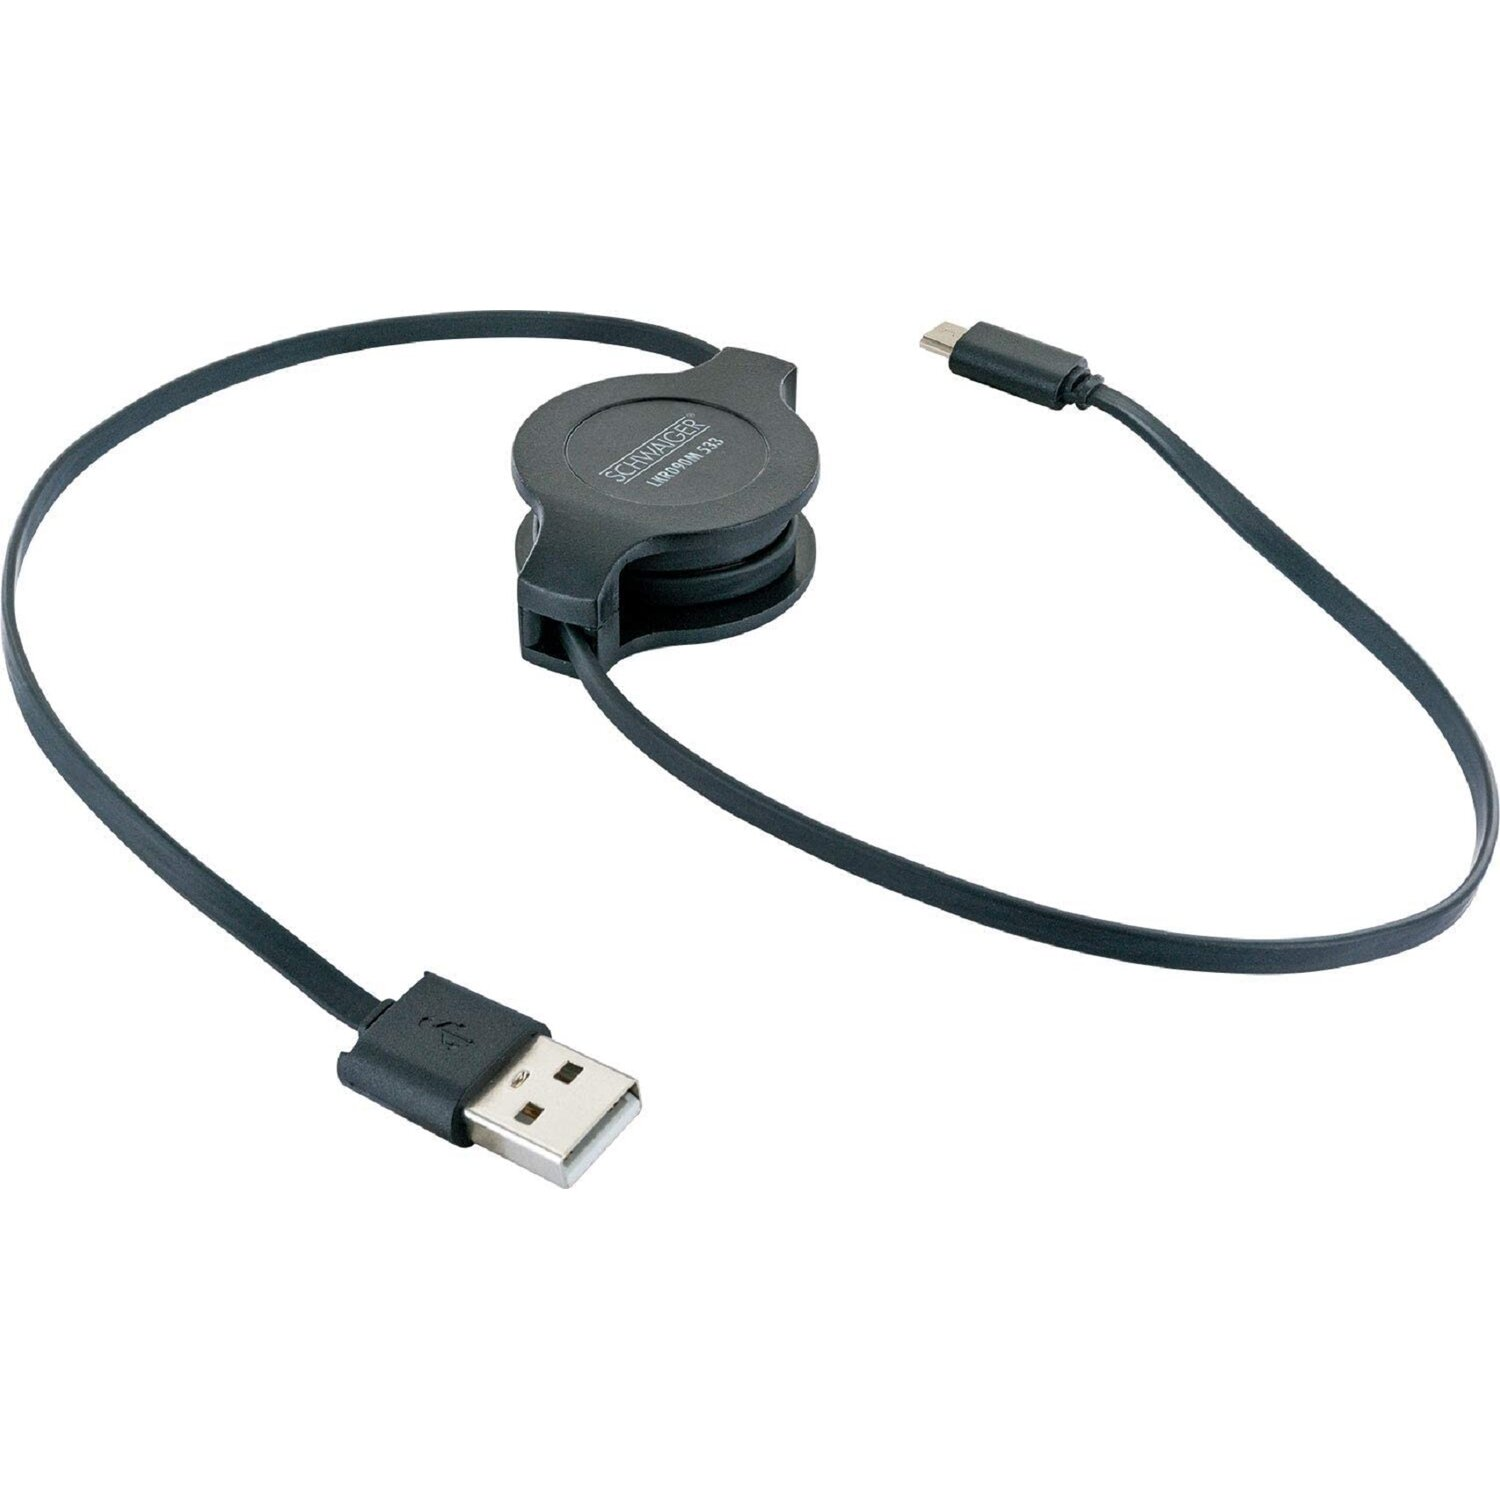 LKR090M SCHWAIGER Schwarz Micro-USB, 90 cm, Ladekabel,